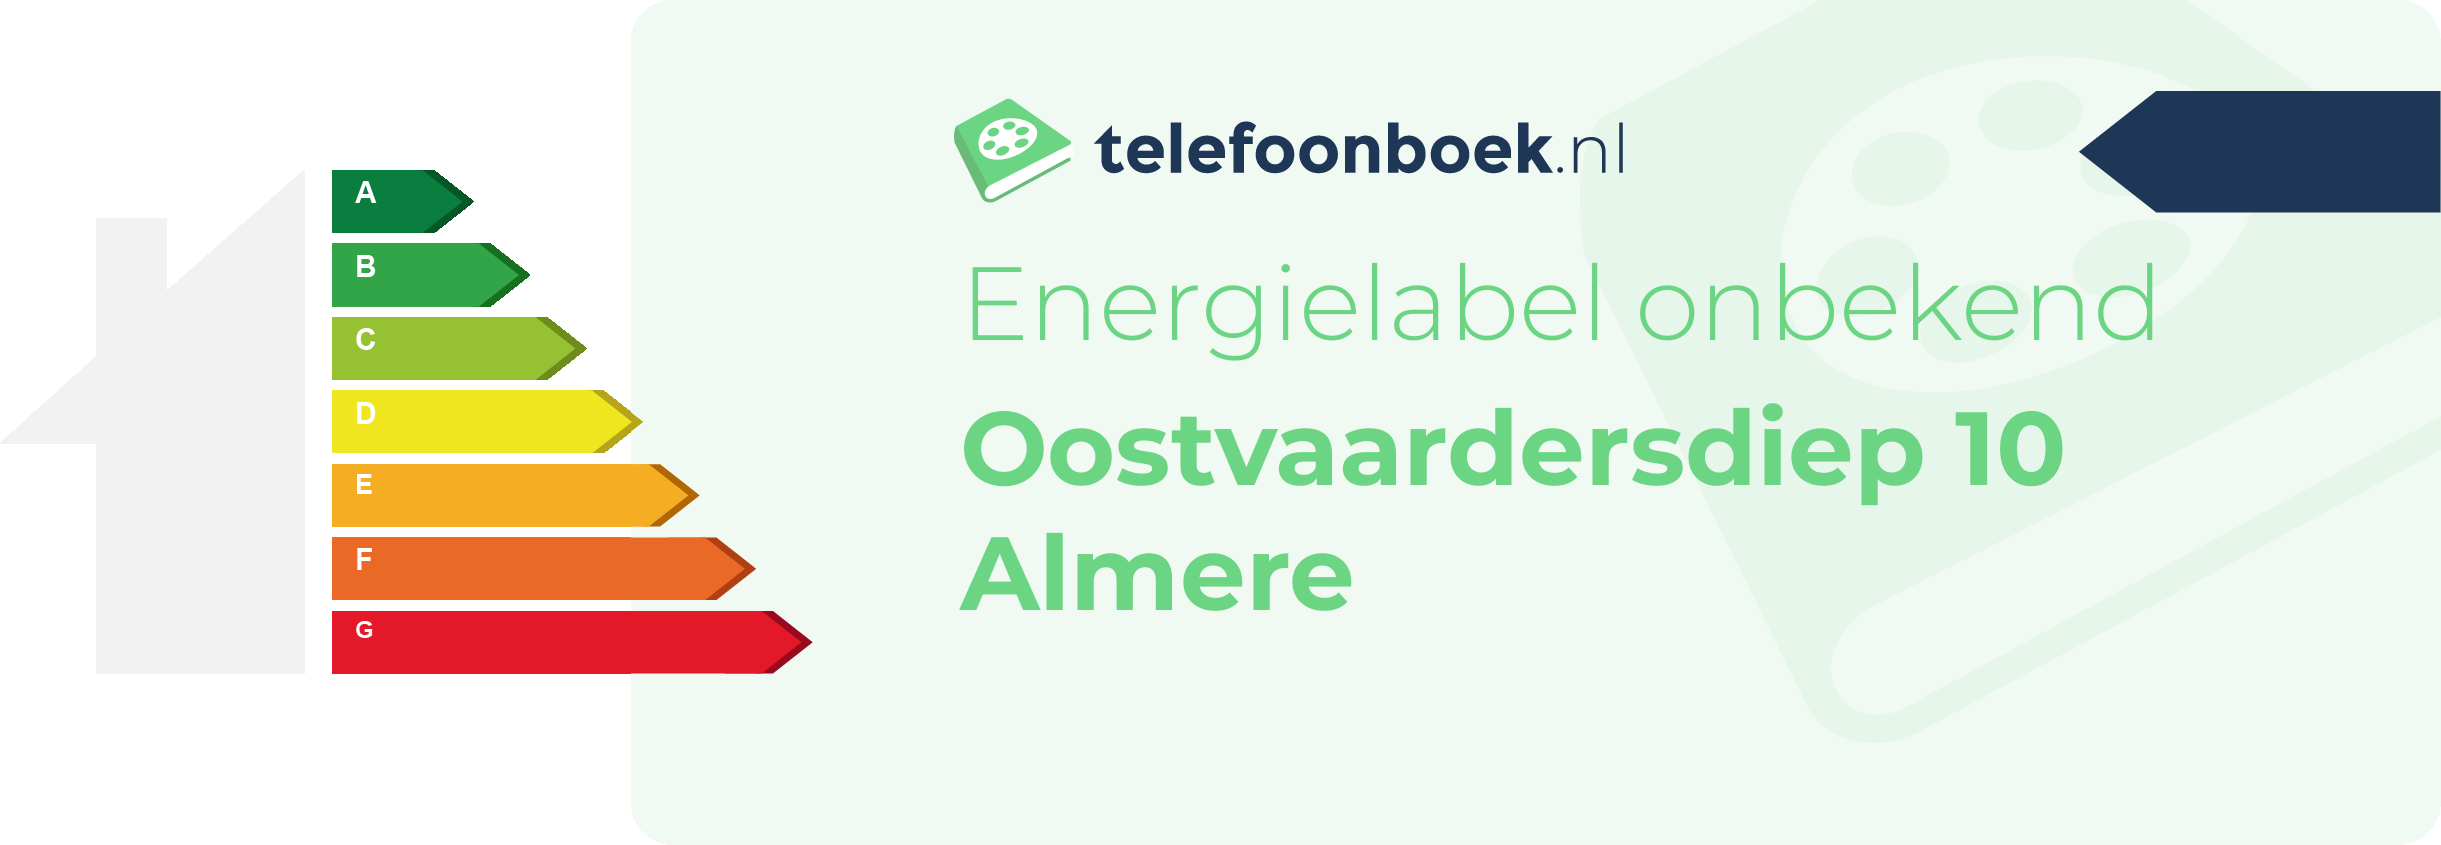 Energielabel Oostvaardersdiep 10 Almere